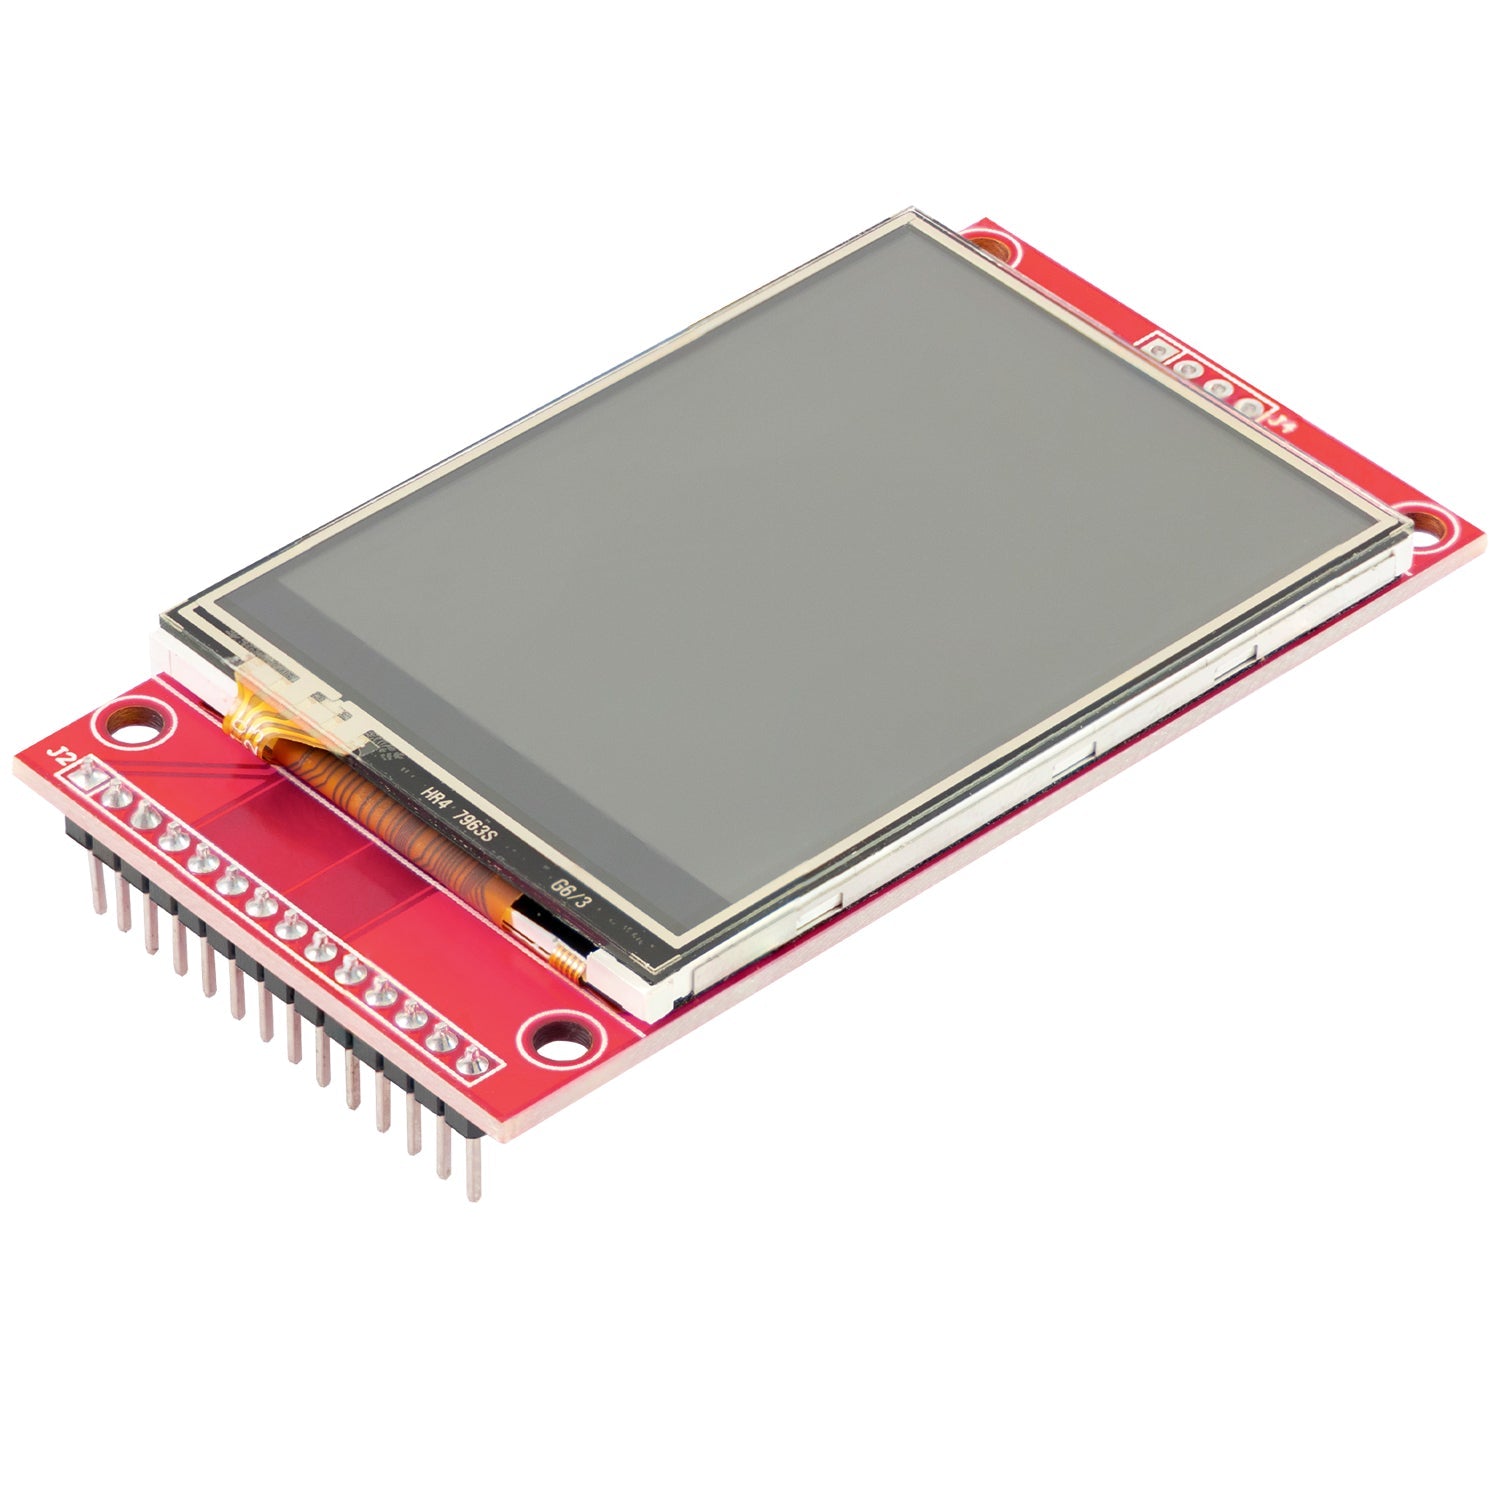 2,4 Zoll LCD TFT Touch Display - Kompatibel mit Arduino und Raspberry Pi - 320x240 Auflösung, ILI9341 Treiber, SPI Schnittstelle - AZ-Delivery